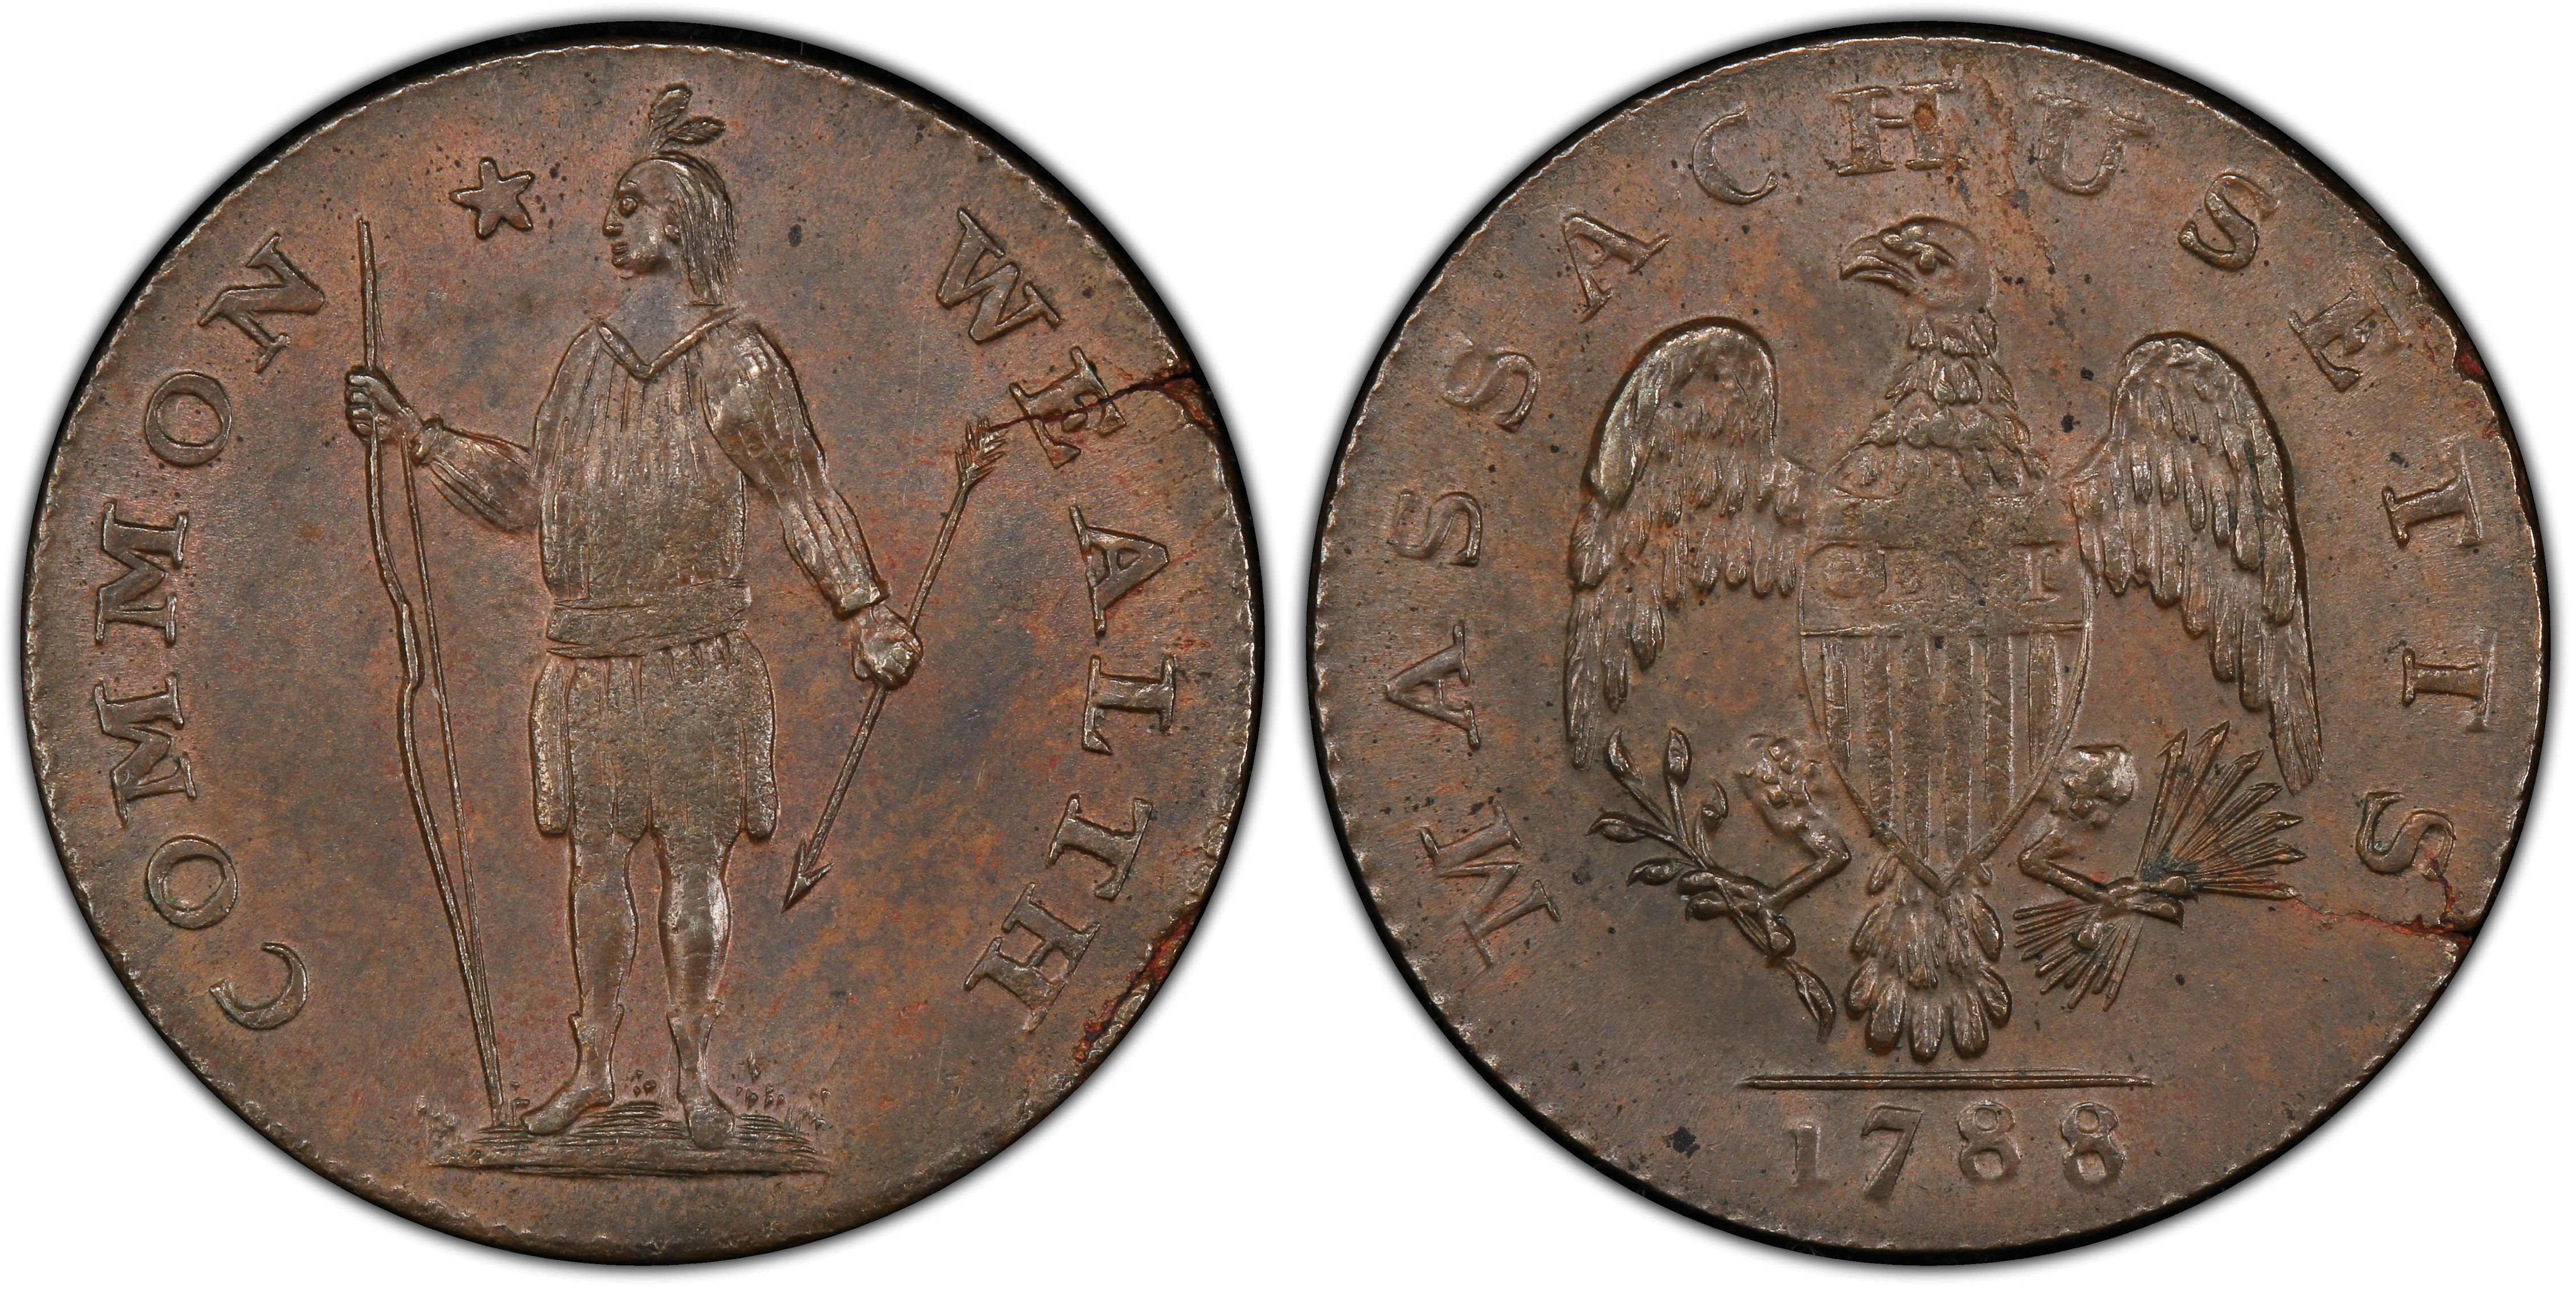 1788 quarter dollar coin